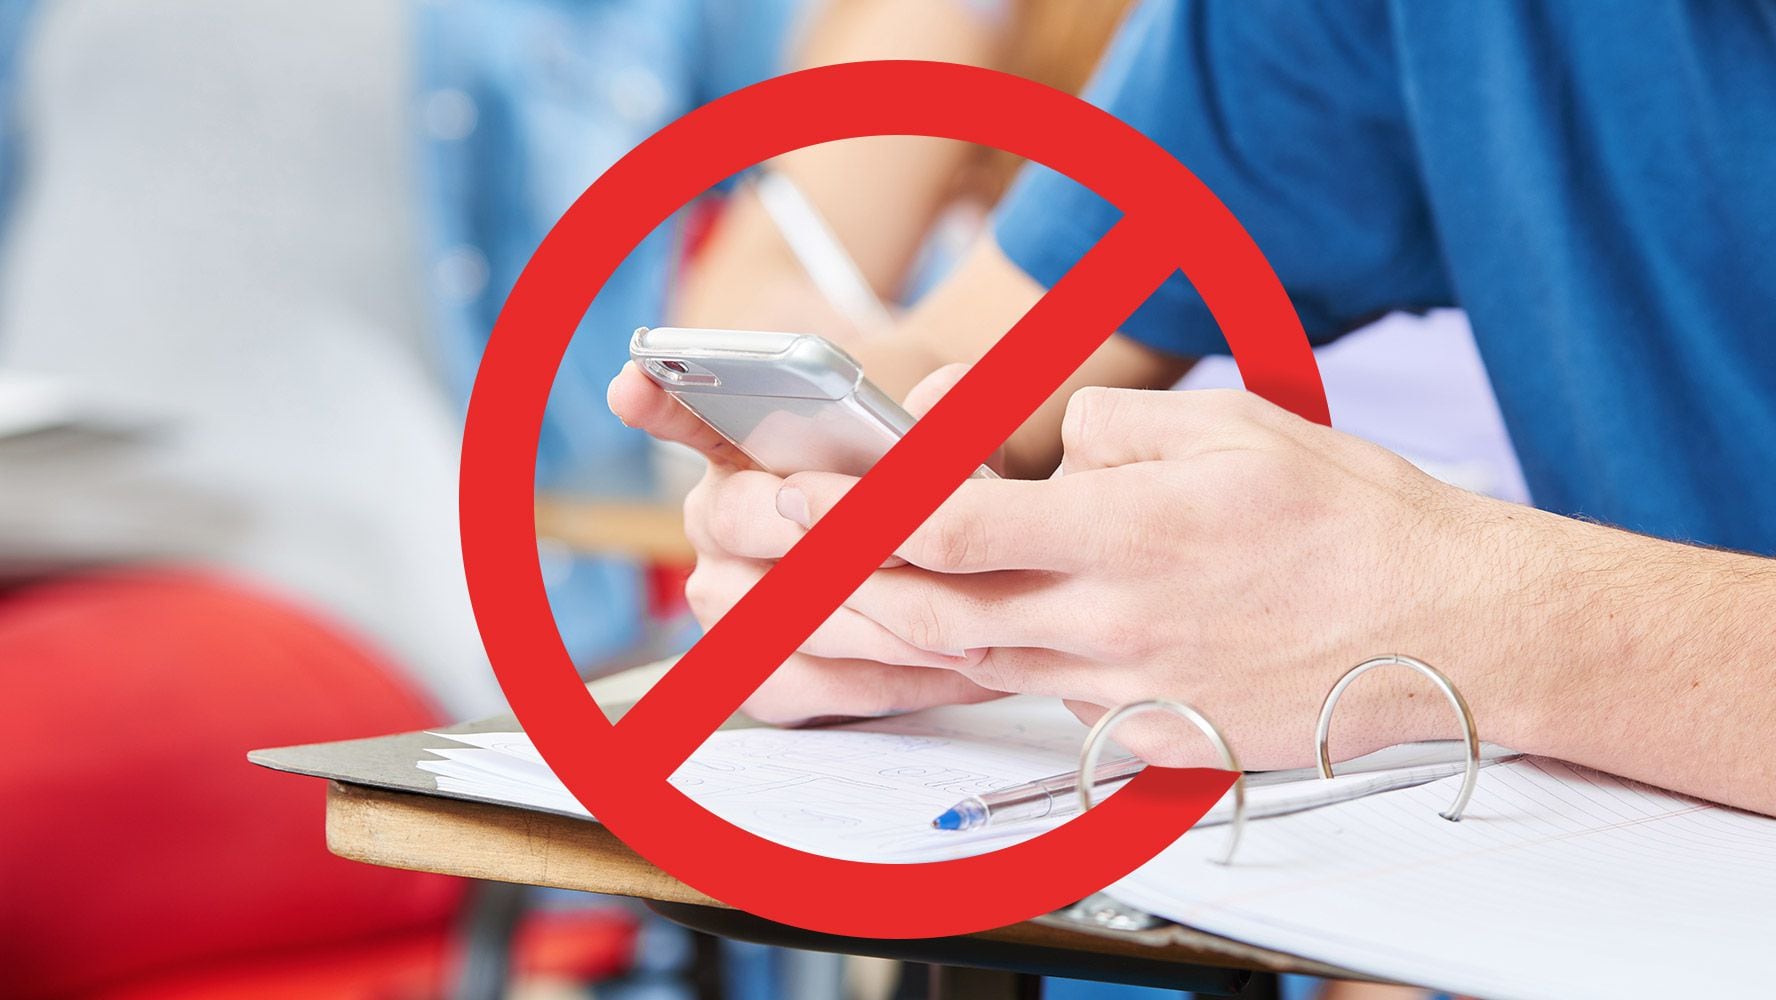 Ojo acá, SEP: Prohibir celulares en escuelas SÍ ayuda a mejorar calificaciones de estudiantes